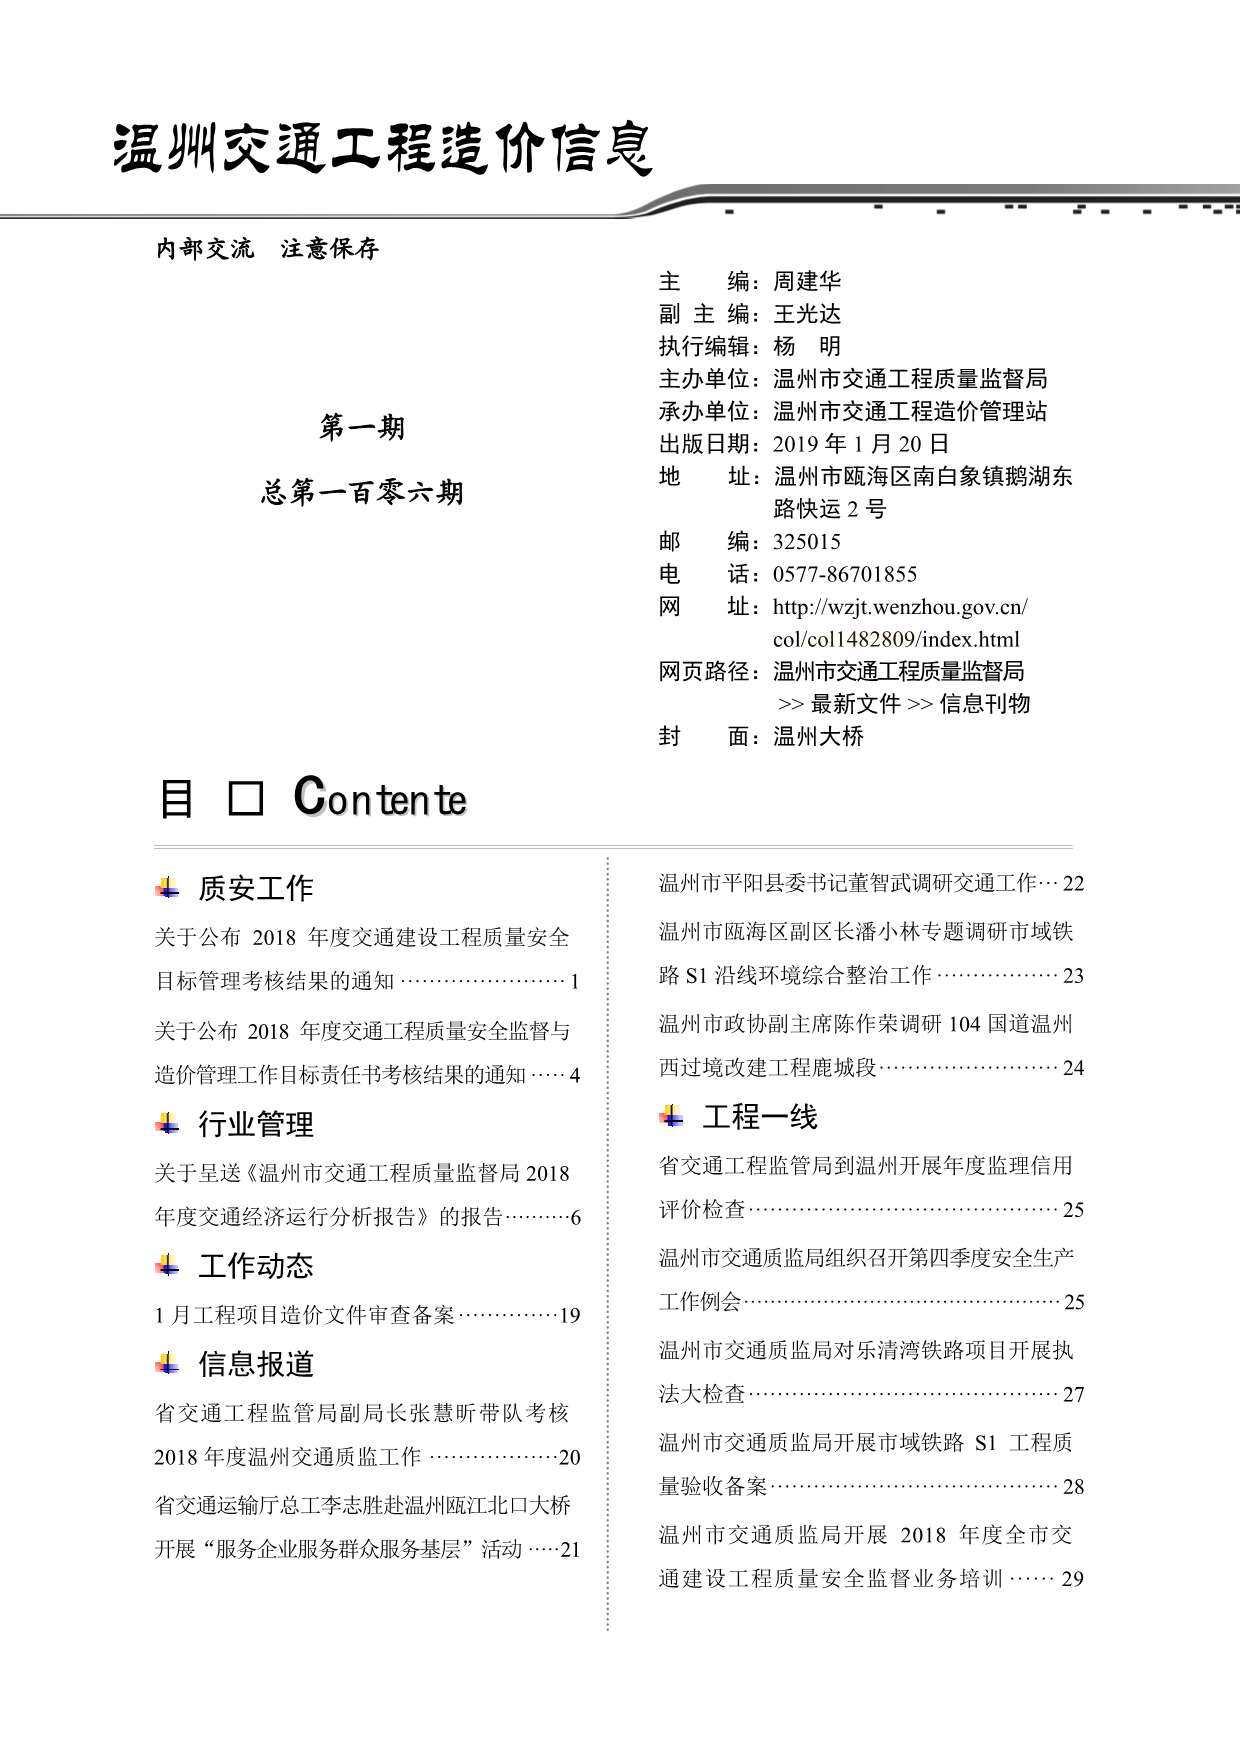 2019年1期温州交通造价信息期刊PDF扫描件